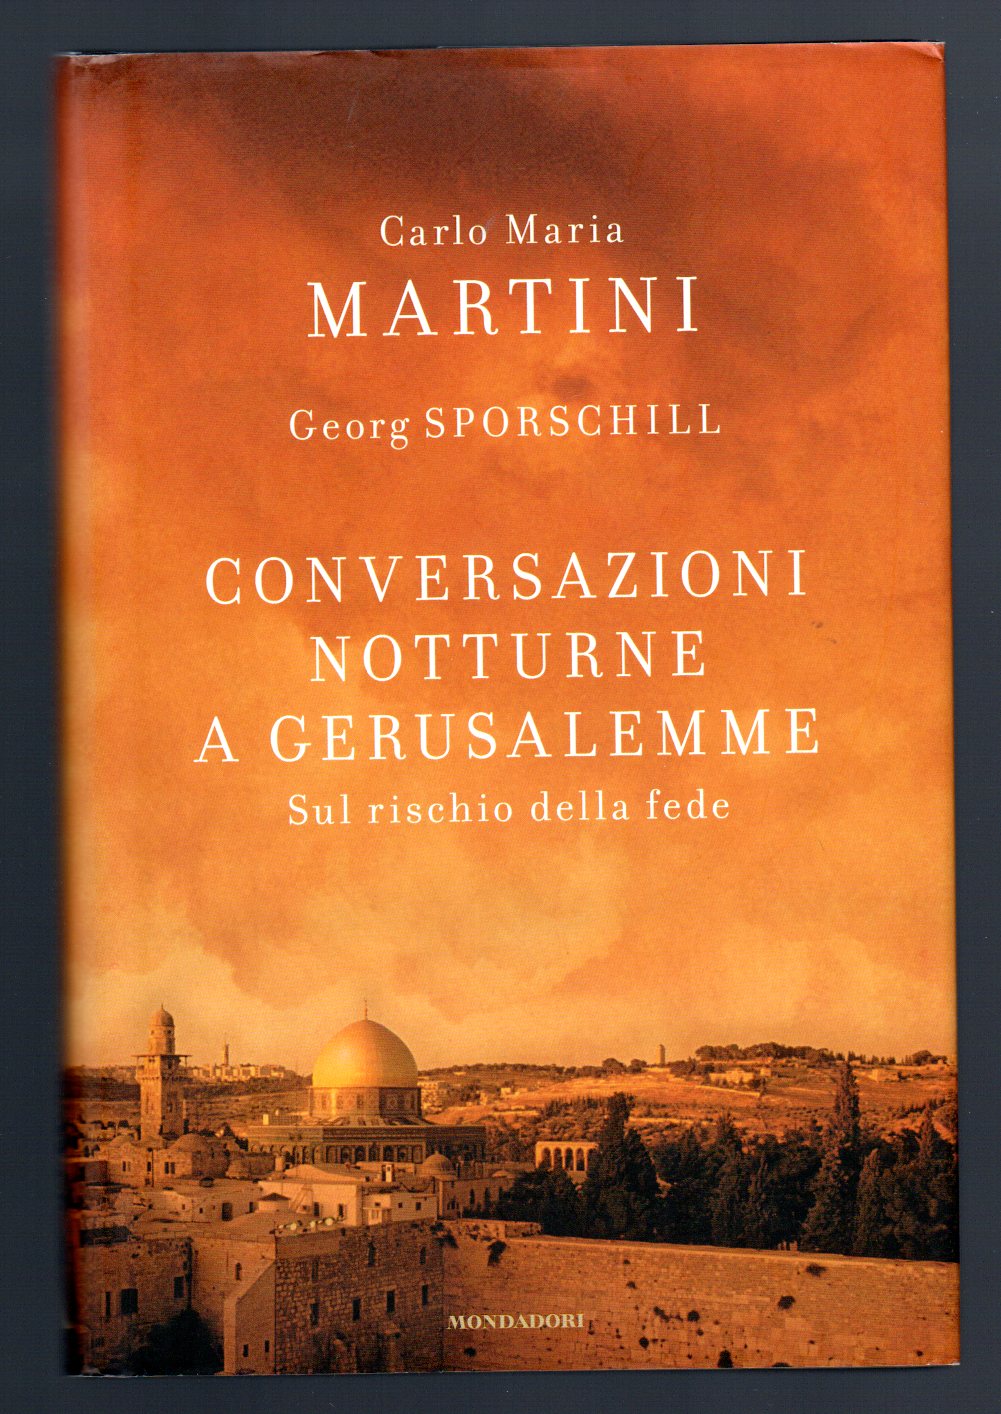 Conversazioni notturne a Gerusalemme - Martini Carlo Maria - Sporschill Georg